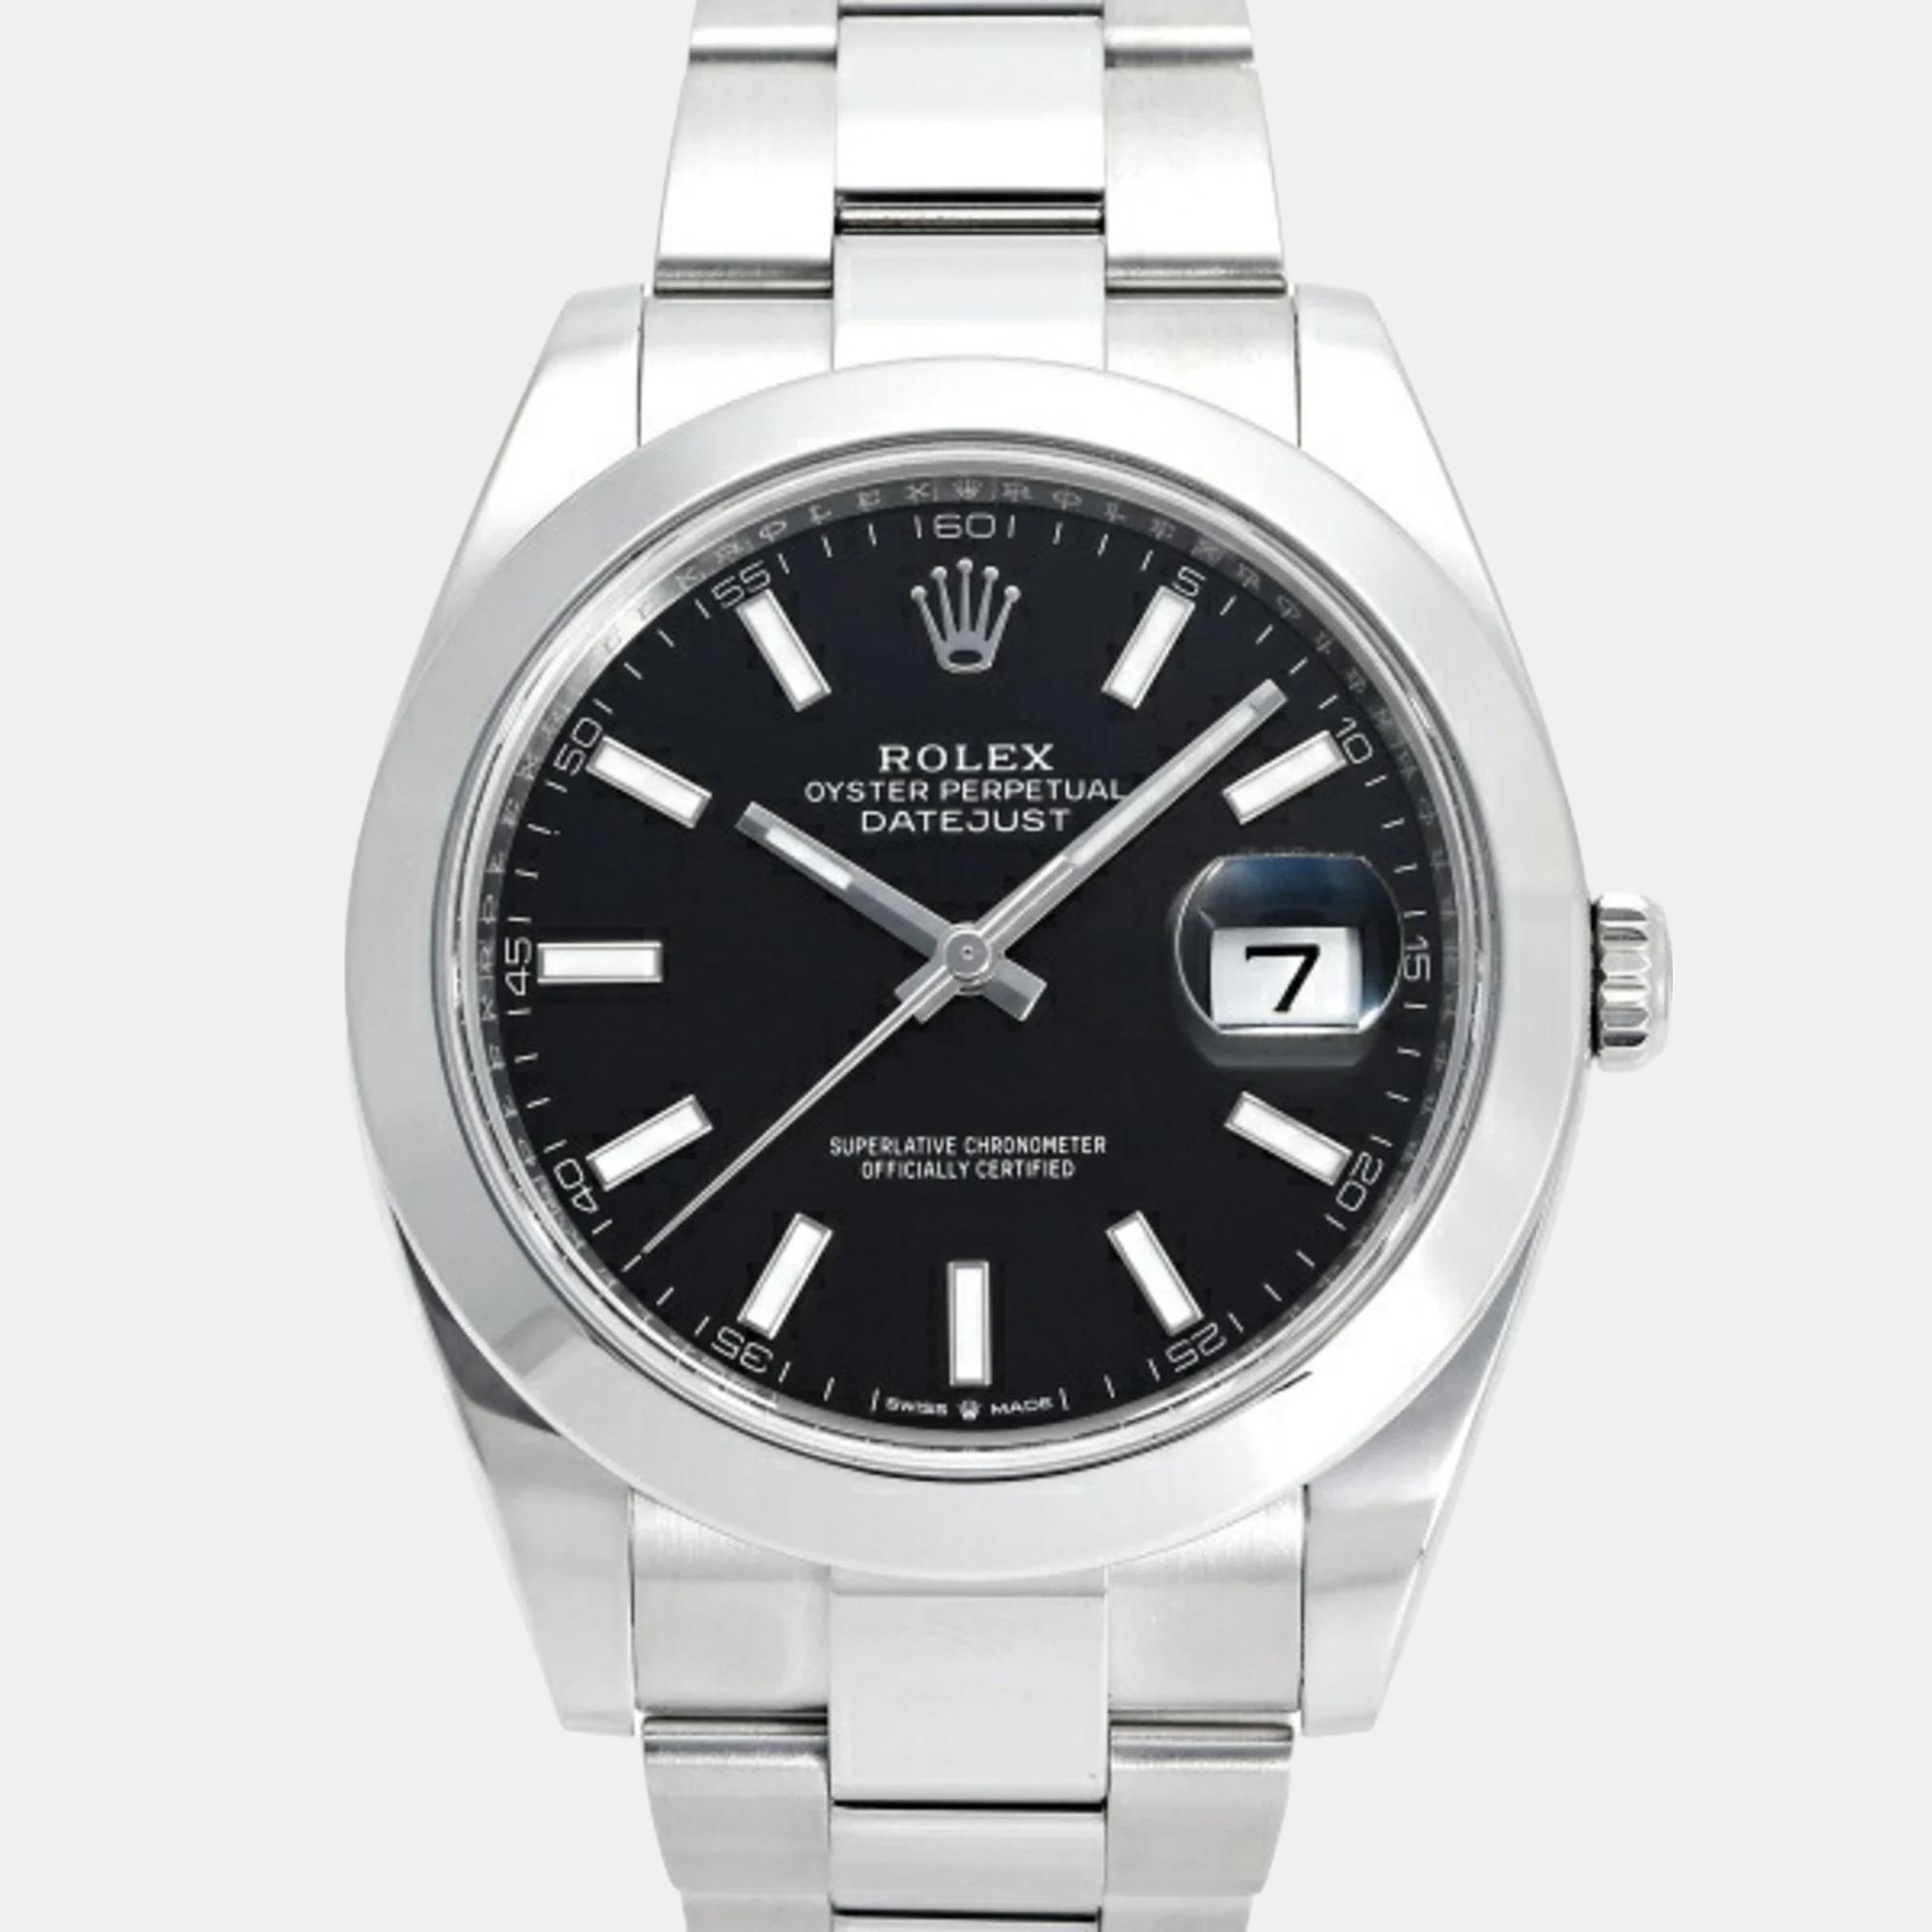 Rolex black stainless steel datejust 126300 men's watch 41mm